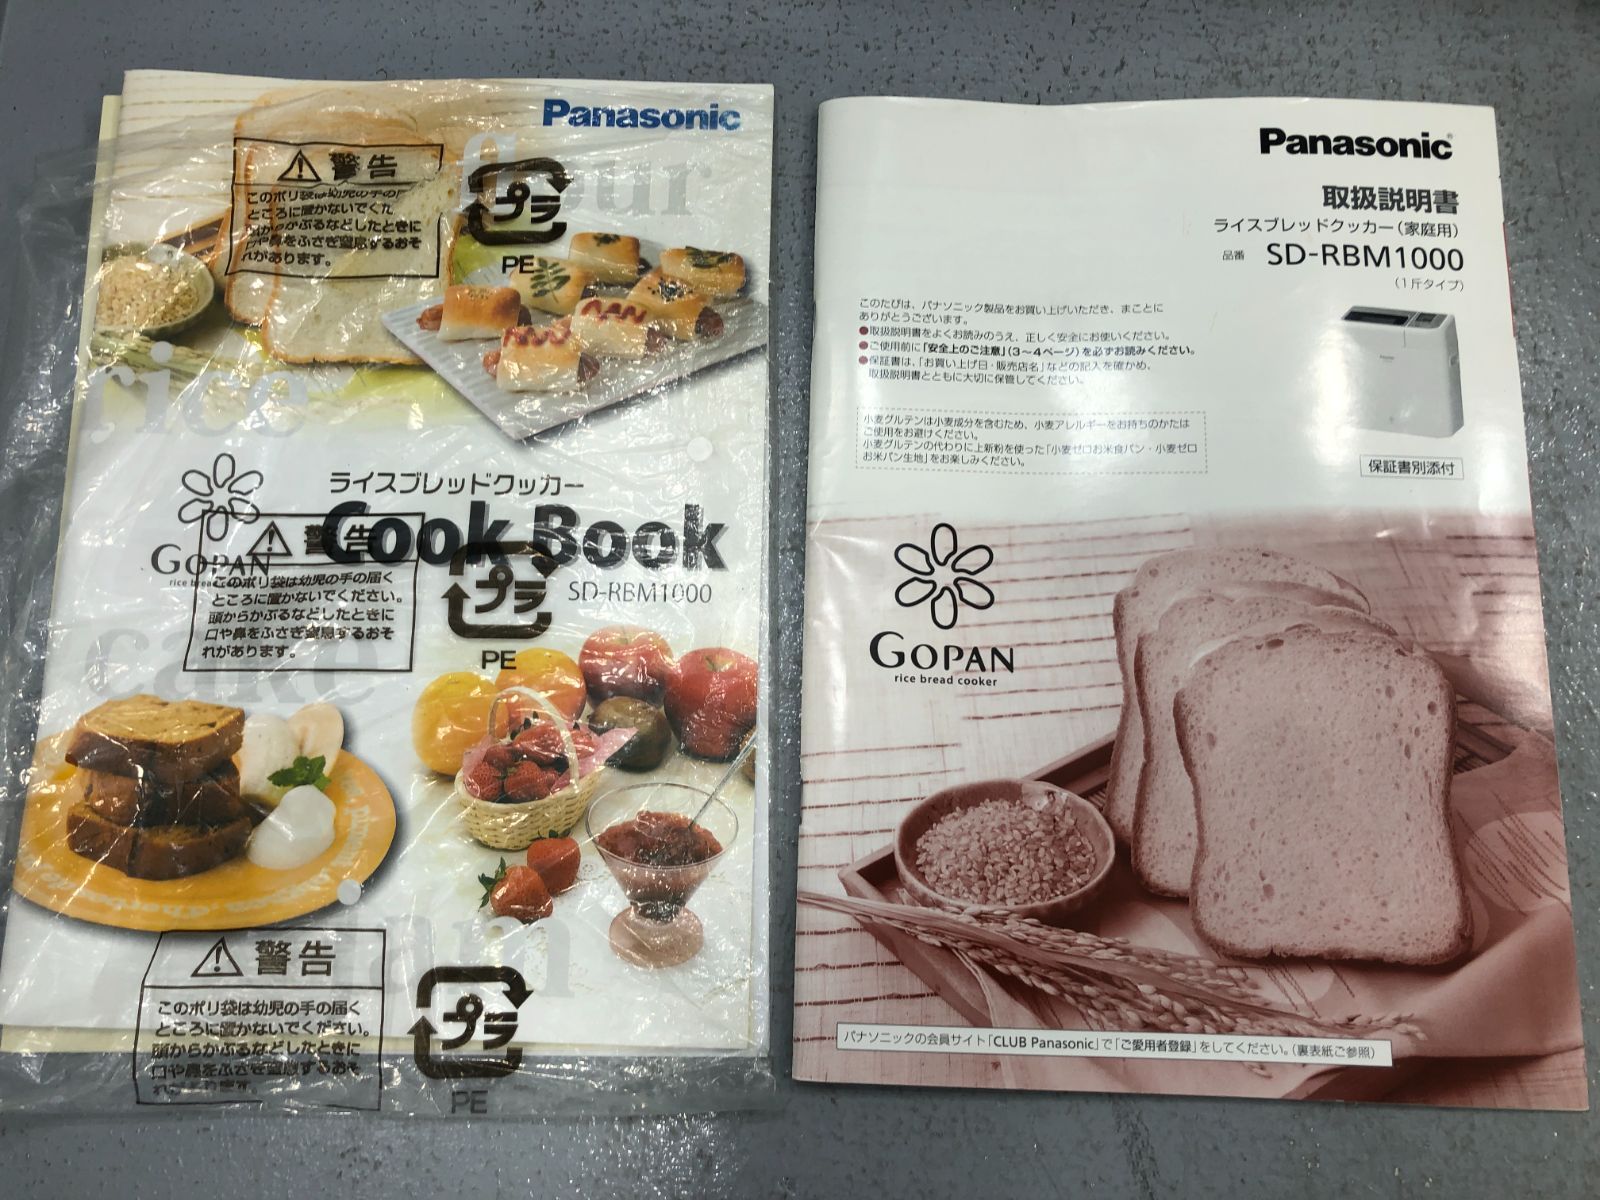 小牧店】Panasonic ライス ブレッド クッカー GOPAN ゴパン 1斤タイプ